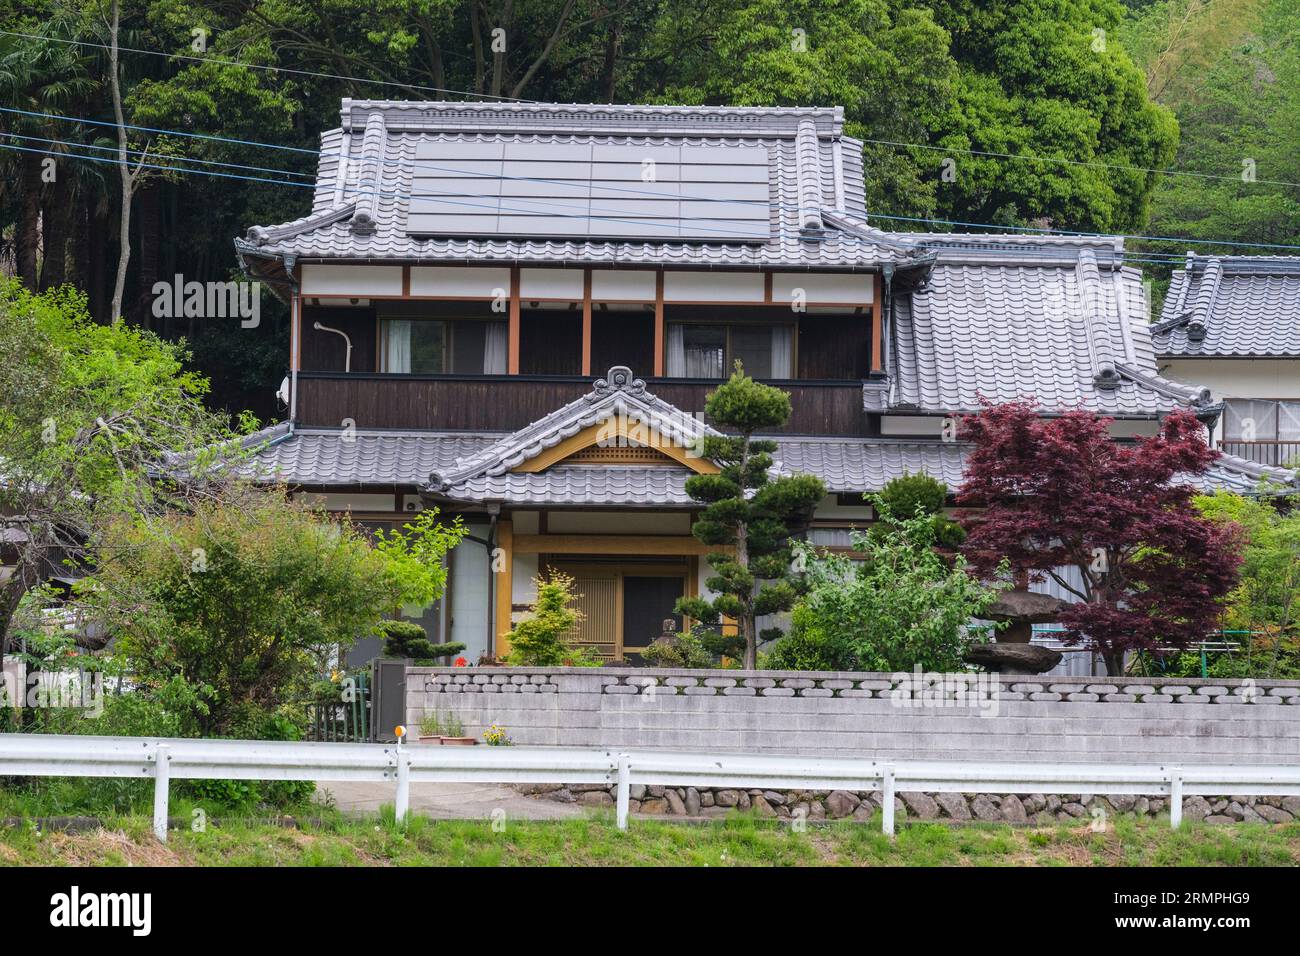 Japon, Kyushu. Maison avec panneaux solaires, près de Bungo-Takada, préfecture d'Oita, péninsule de Kunisaki. Banque D'Images